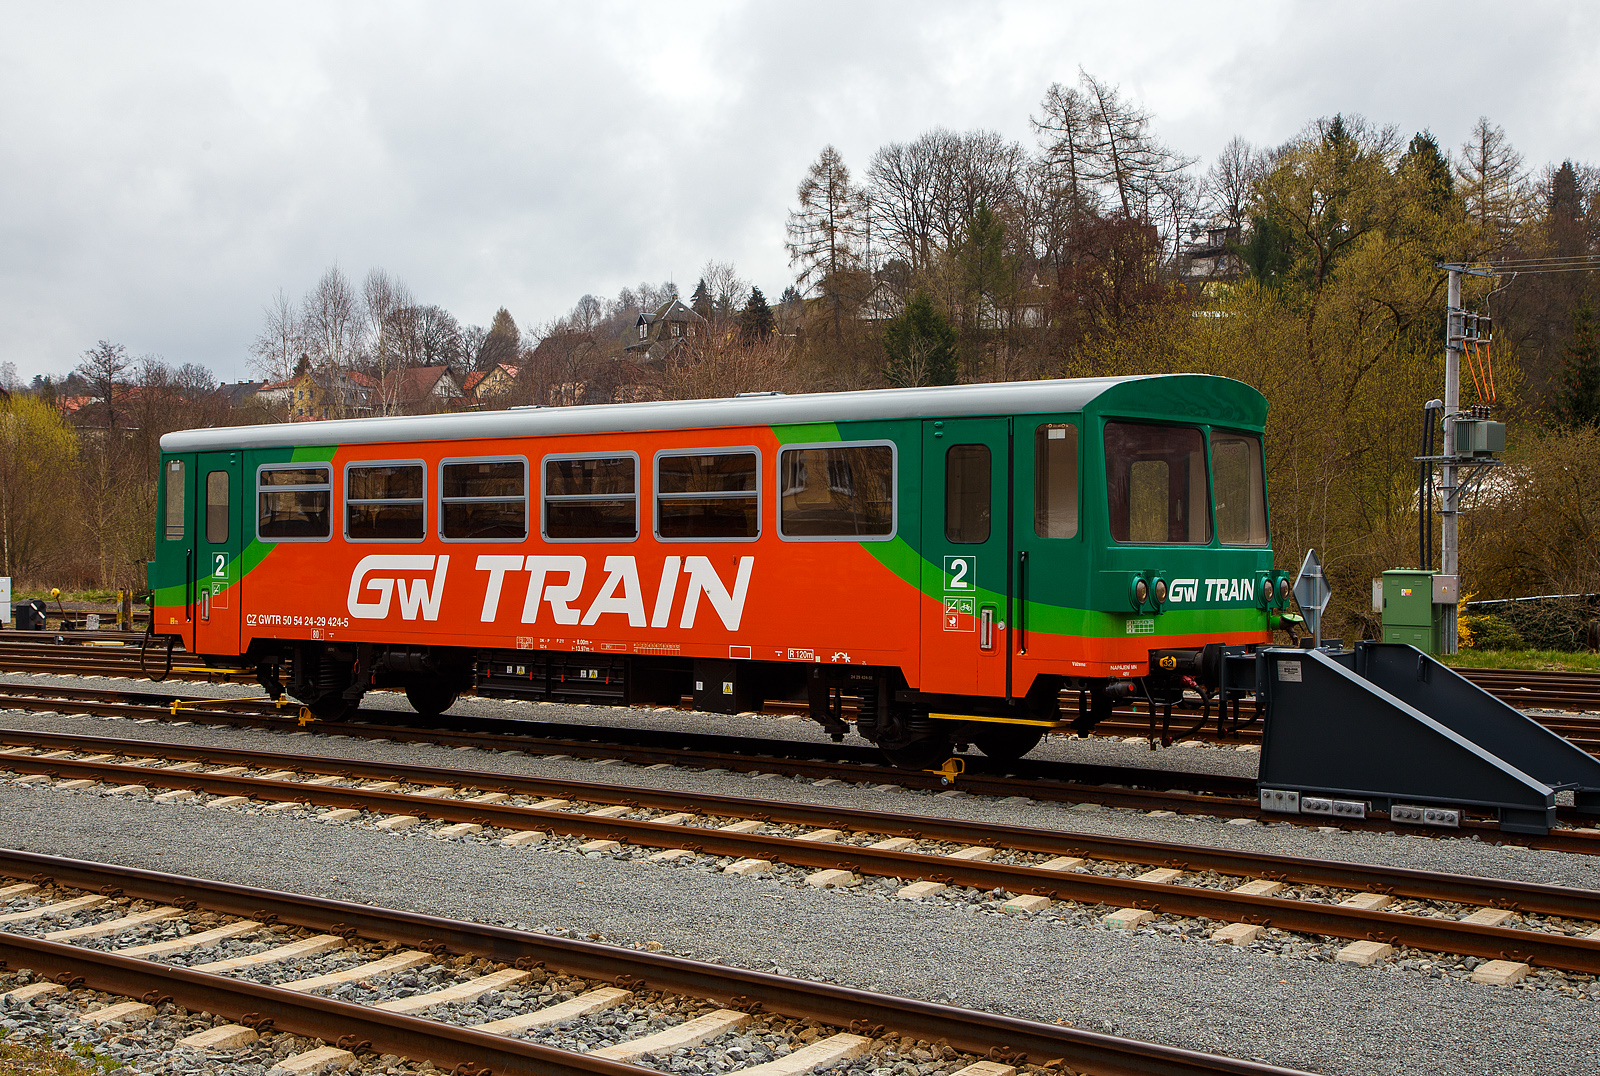 Zweiachsiger VT Beiwagen CZ-GWTR 50 54 24-29 424-5 der GW Train Regio a.s., zu Dieseltriebwagen (VT) der BR 816 (oder BR 810), abgestellt am 20.04.2023 im Bahnhof Bečov nad Teplou (Petschau).

TECHNISCHE DATEN:
Hersteller: ČKD Vagónka in Studénka (heute Škoda Vagonka a.s.)
Spurweite: 1.435 mm (Normalspur)
Anzahl der Achsen. 2 
Länge über Puffer: 13.970 mm
Höhe: 3.500 mm
Achsabstand: 8.000 mm
Eigengewicht: 15 t
Höchstgeschwindigkeit: 80 km/h
Sitzplätze: 69
Kleinster befahrbarer Gleisbogenhalbmesser: R 120 m

Die GW Train Regio a.s. (bis 20.12. 2011 Viamont Regio a.s.) ist ein Eisenbahnverkehrsunternehmen in Tschechien, mit Sitz in Ústí nad Labem-Střekov. Die Gesellschaft betreibt Personenbeförderung mit der Bahn in vier Landkreisen der Tschechischen Republik sowie die Bahnstrecke R25 Plzeň - Most im Auftrag des Verkehrsministeriums der Tschechischen Republik. Zudem bietet sie grenzübergreifenden Bahnverkehr zwischen der Tschechischen Republik und Deutschland (Kraslice-Klingenthal), sowie grenzübergreifenden Bahnverkehr zwischen der Tschechischen Republik und Polen (Královec-Lubawka) in der Sommersaison.
